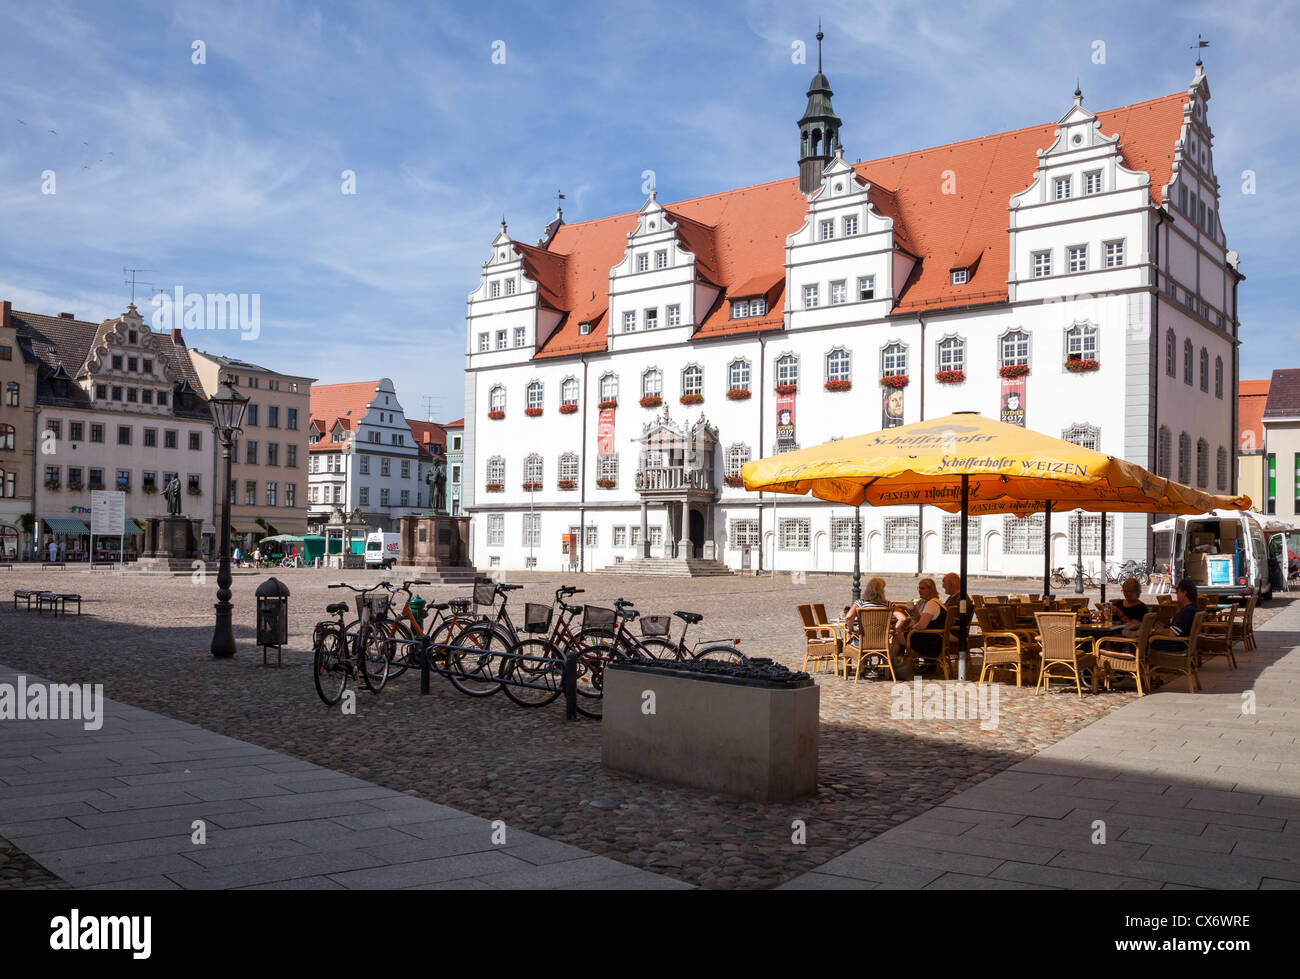 Rathaus und Marktplatz, Lutherstadt Wittenberg, Sachsen Anhalt, Deutschland Stockfoto